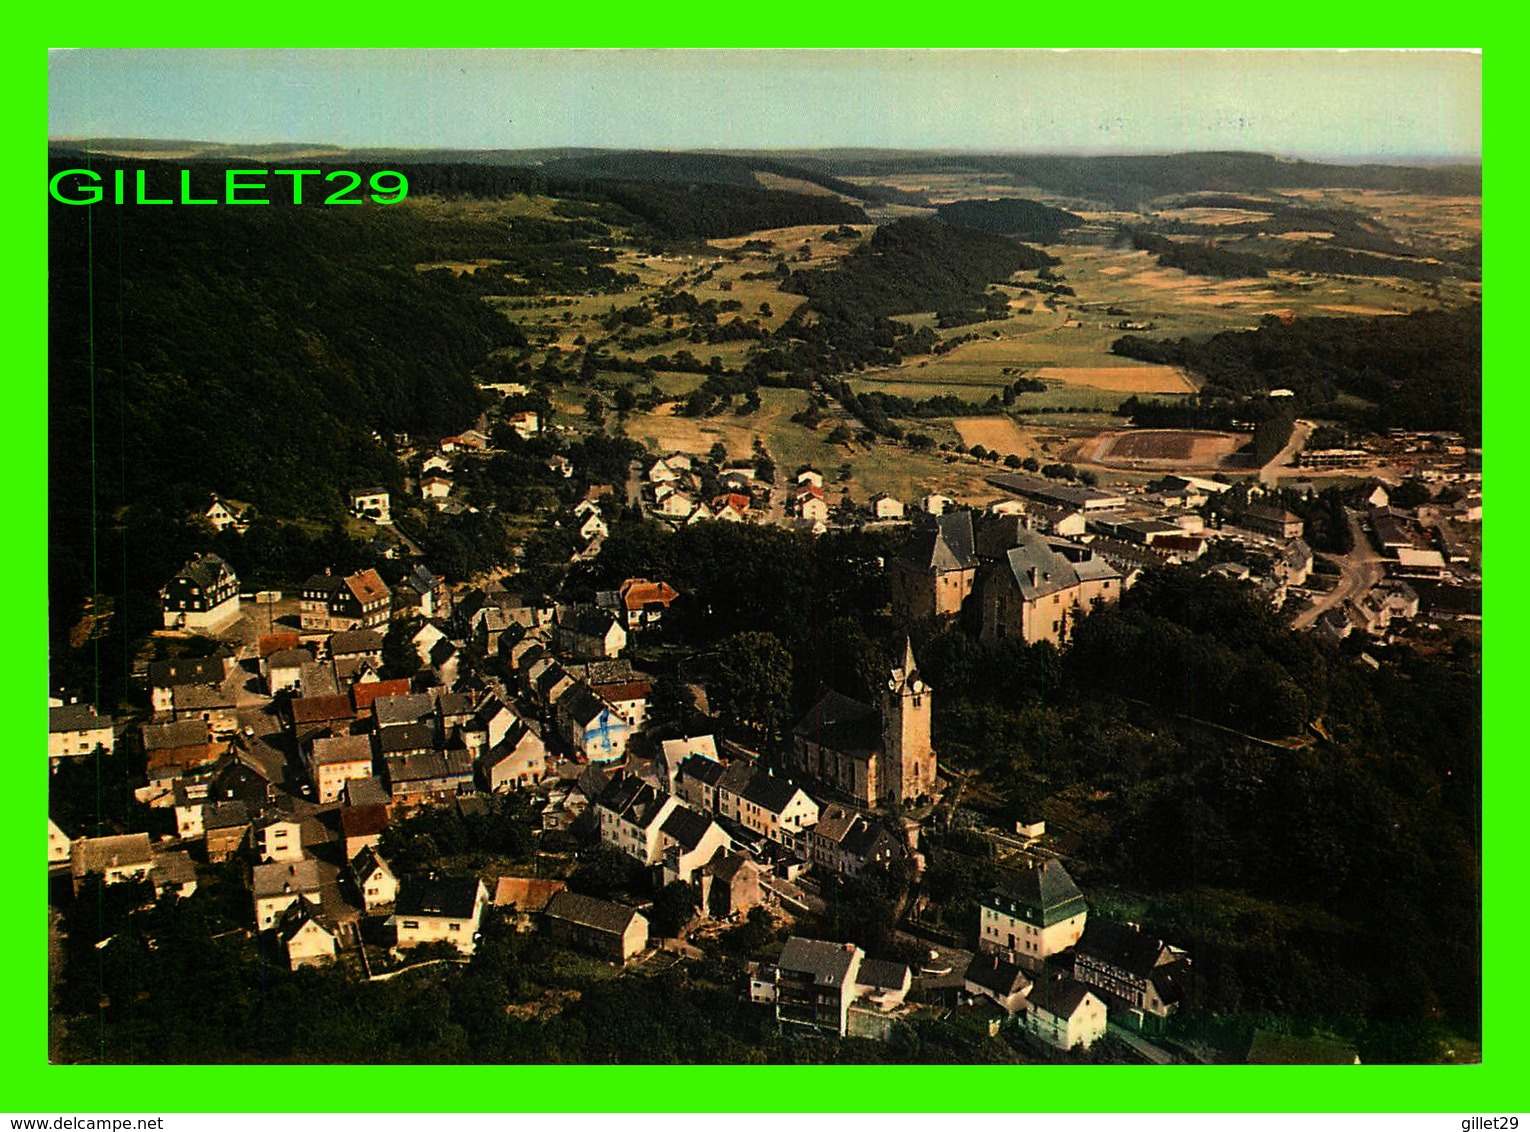 WESTERBURG, GERMANY - LUFTKURORT WESTERBURG - LUFTBILD - TRAVEL IN 1979 - - Westerburg